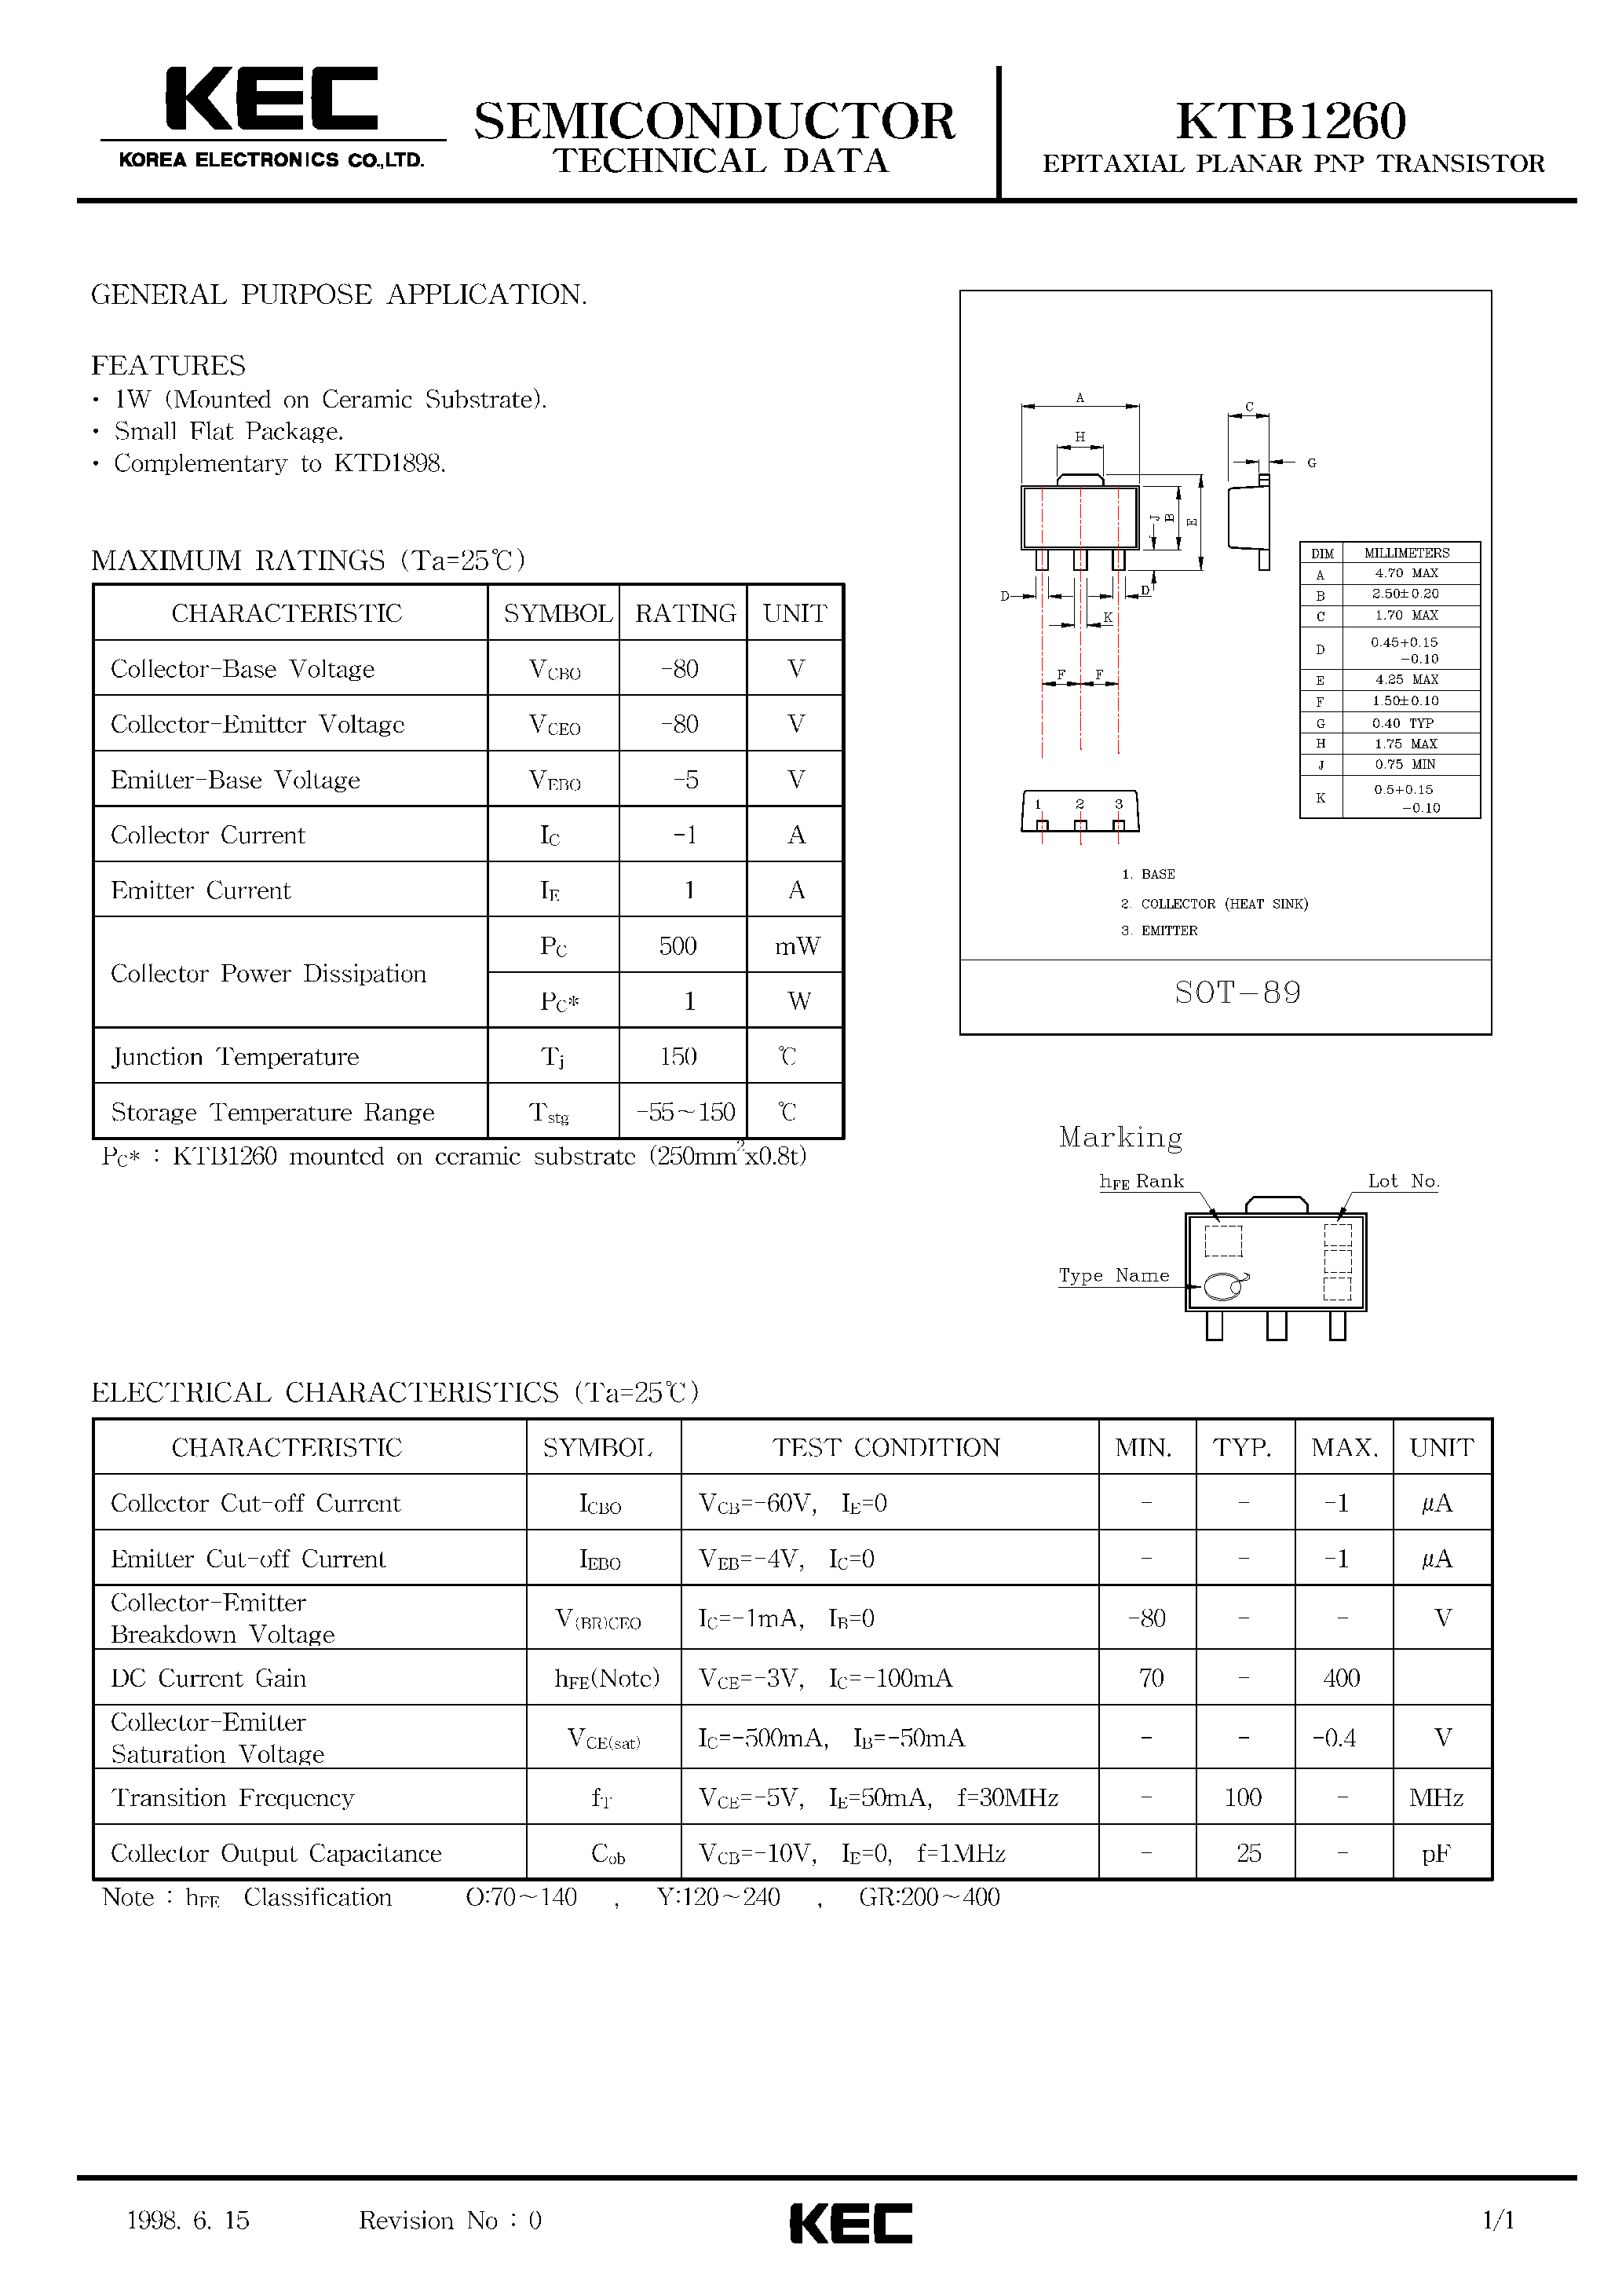 Datasheet KTB1260 - EPITAXIAL PLANAR PNP TRANSISTOR (GENERAL PURPOSE) page 1